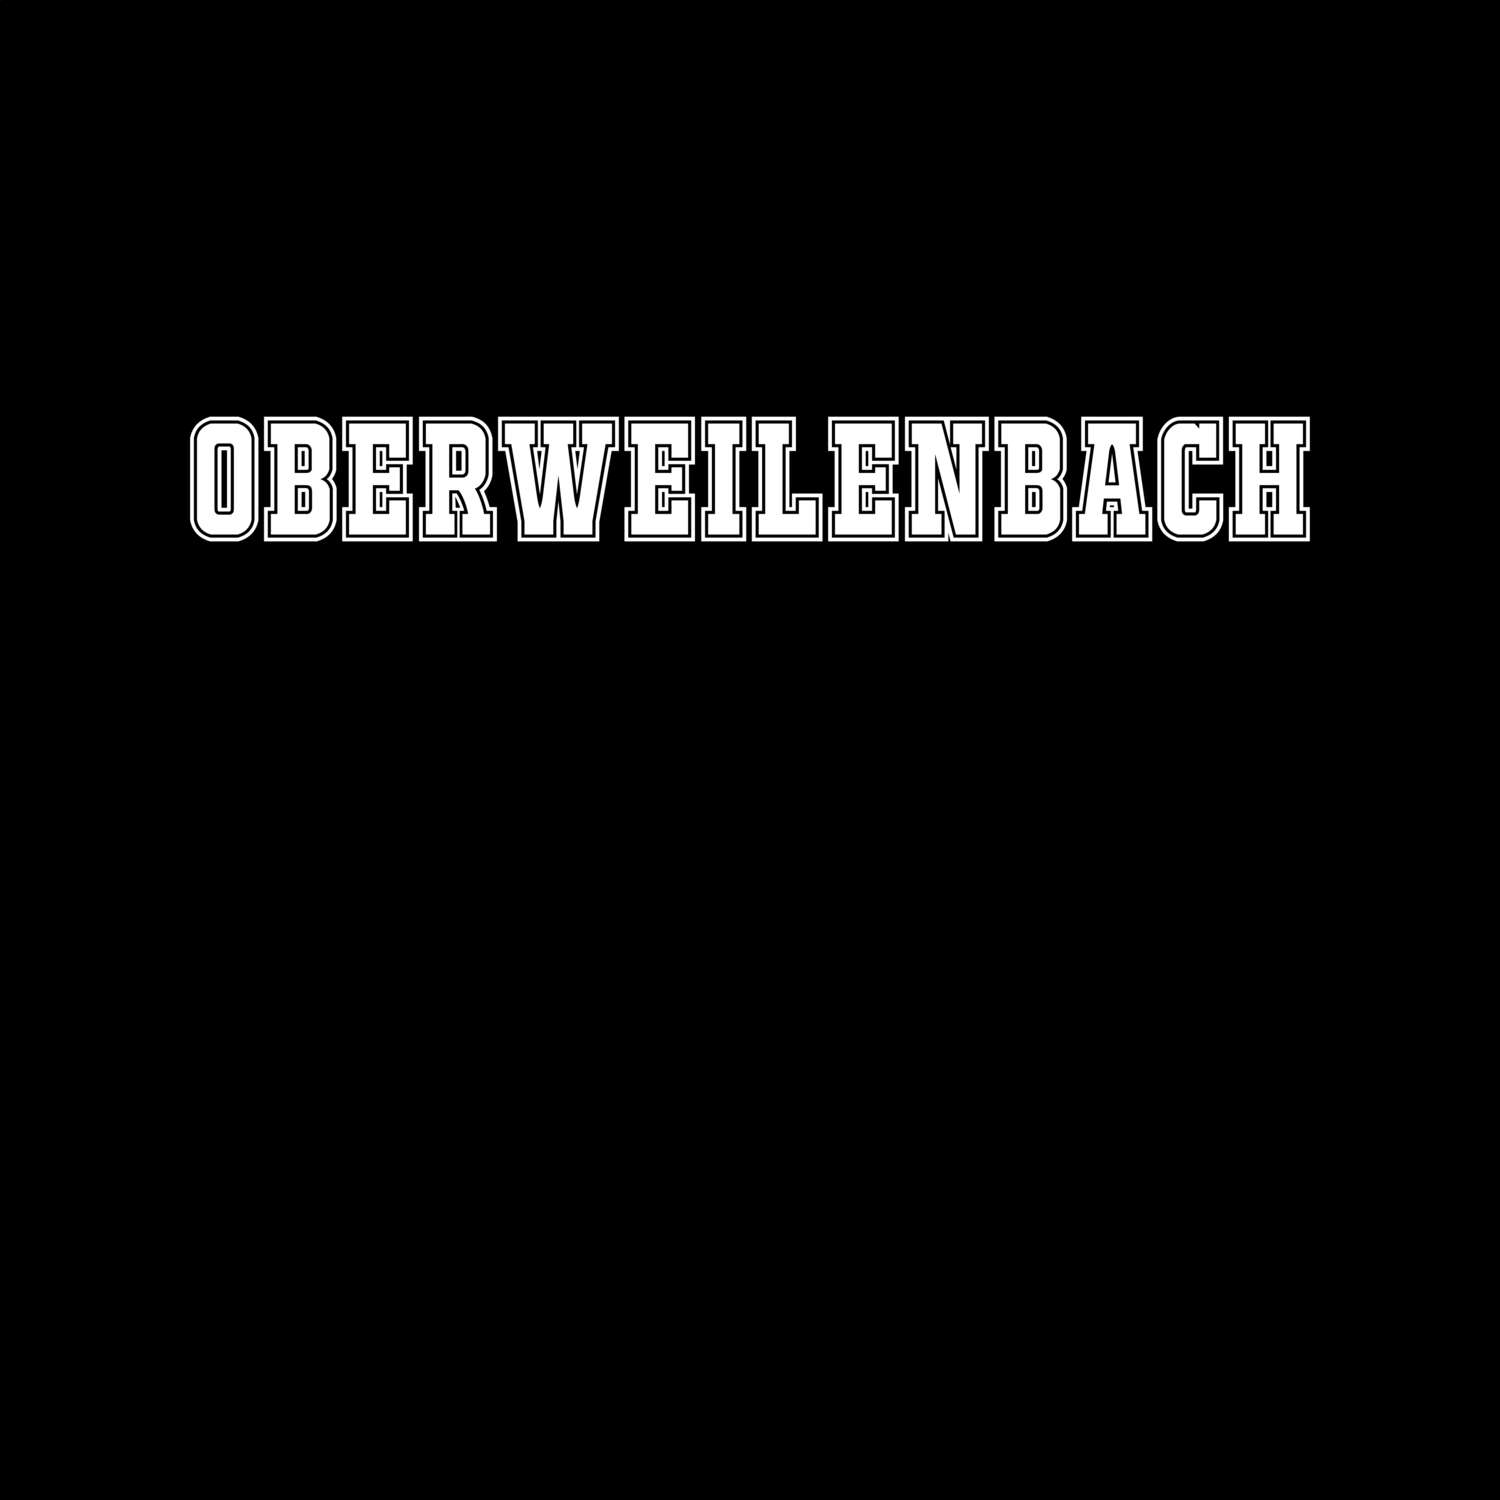 Oberweilenbach T-Shirt »Classic«